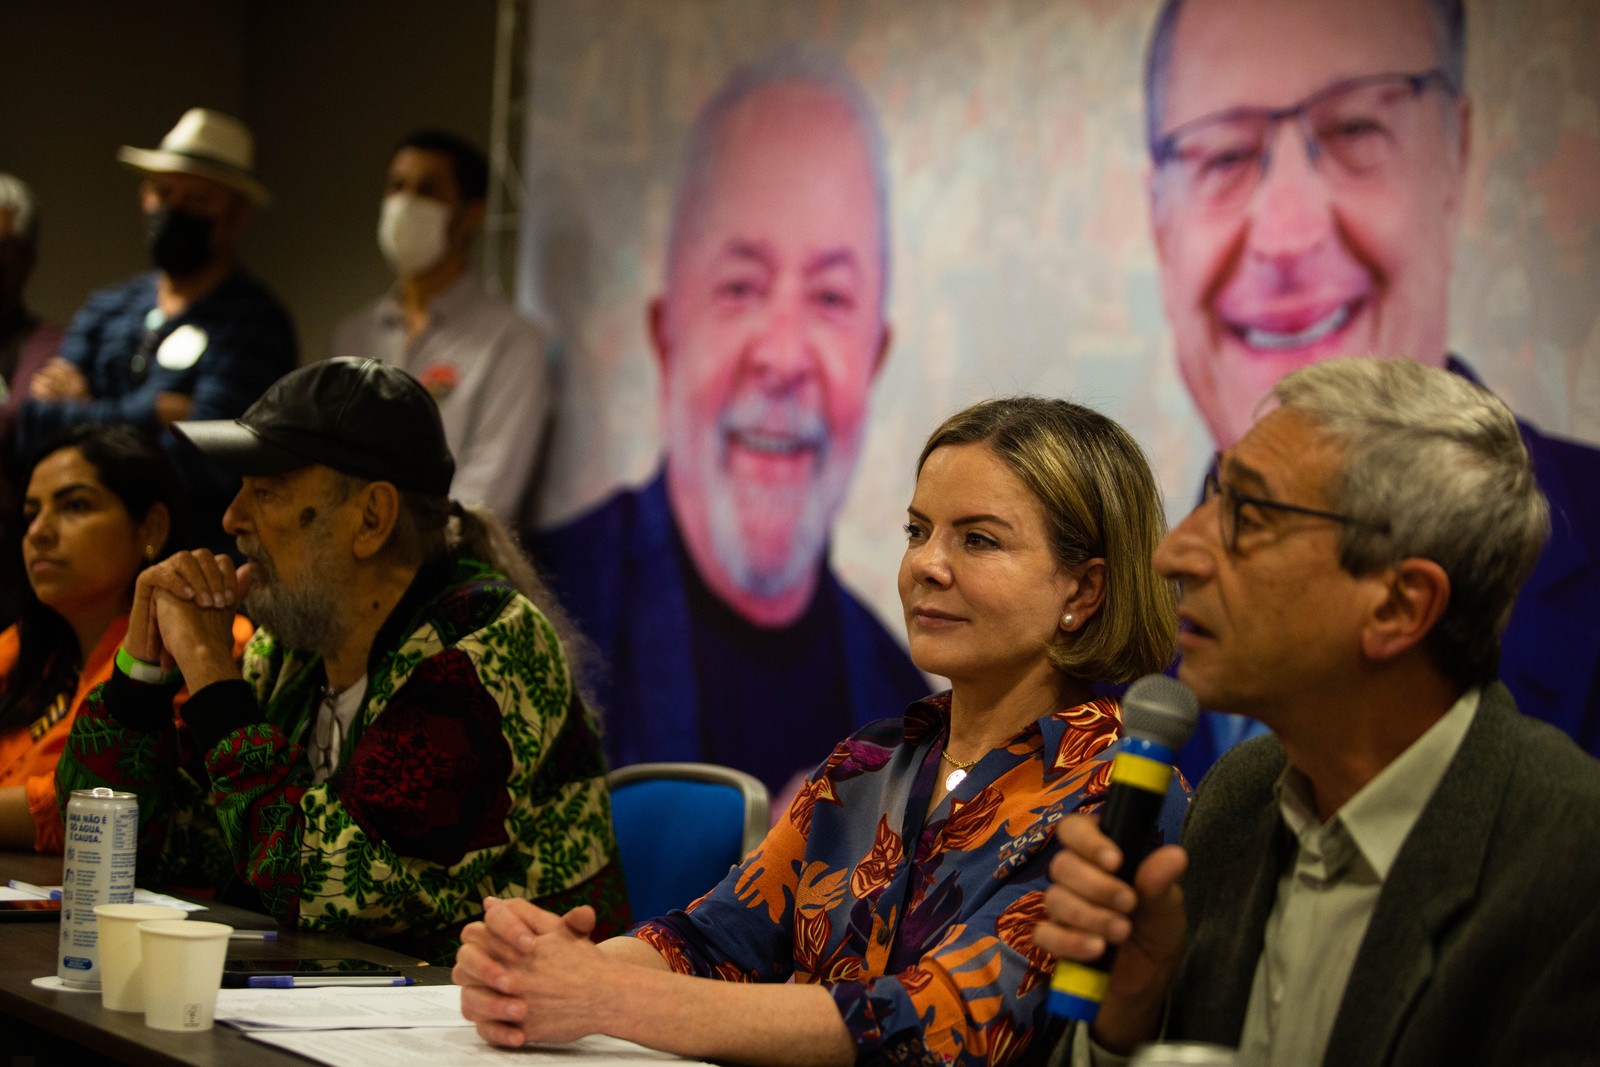 Sem a presença do candidato, PT lança oficialmente a chapa Lula-Alckimin, em evento em São Paulo — Foto: Maria Isabel Oliveira/ Agência O Globo